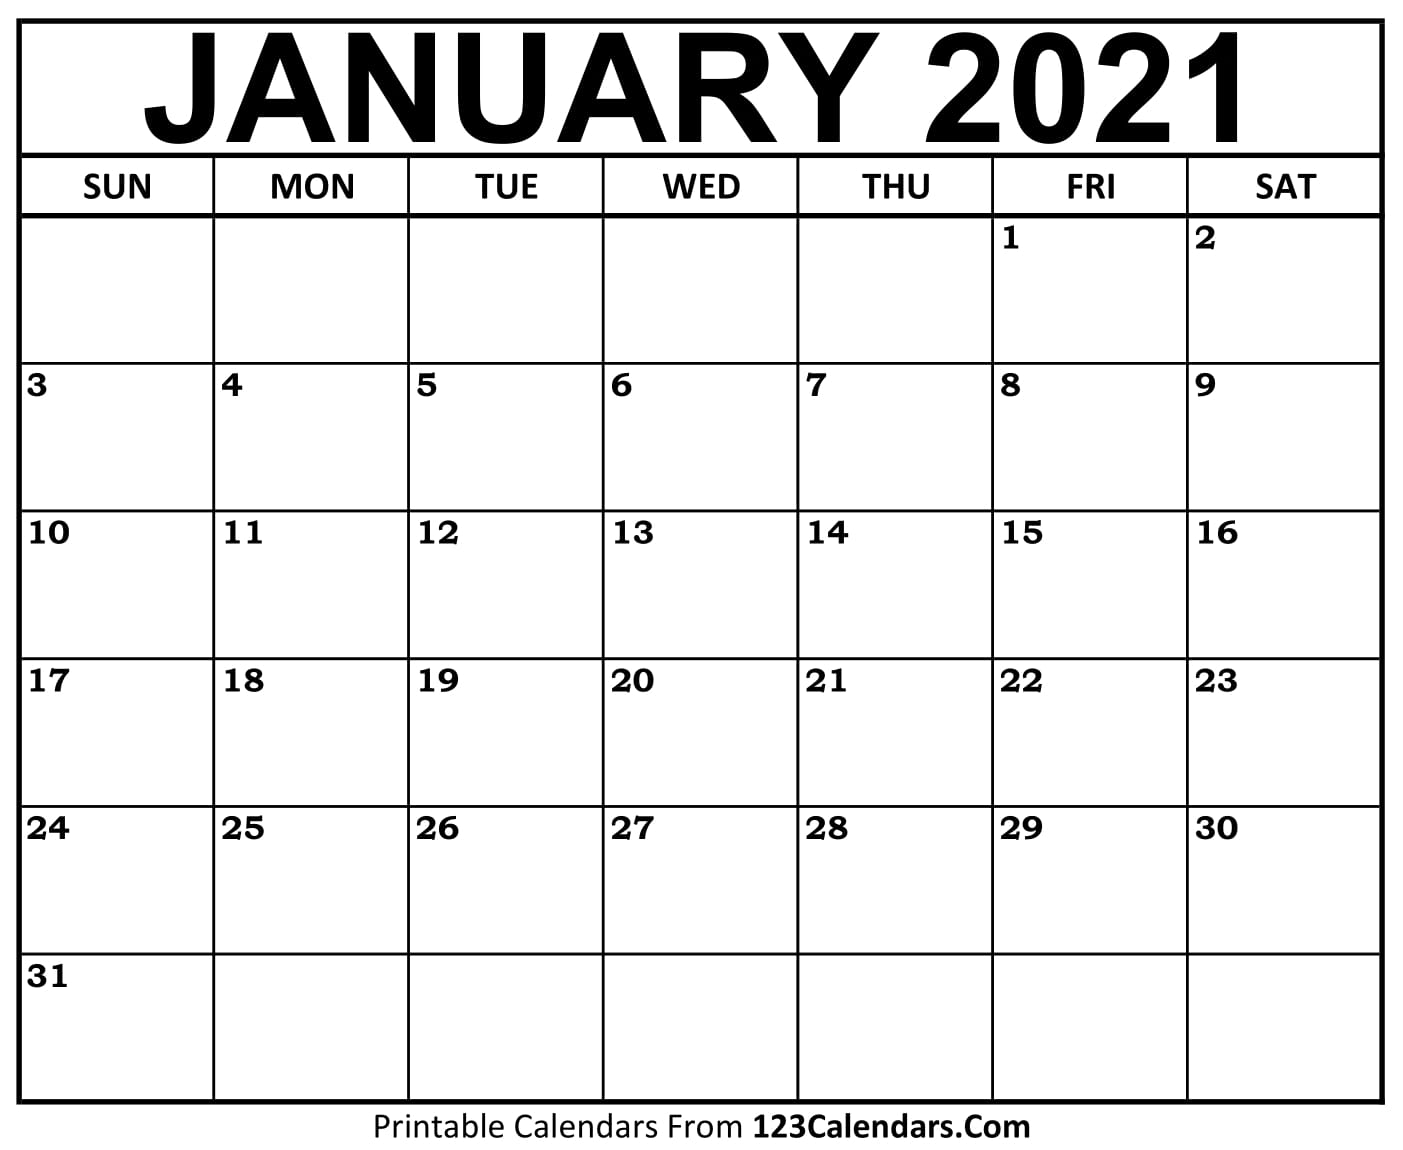 Printable January 2021 Calendar Templates | 123Calendars.com